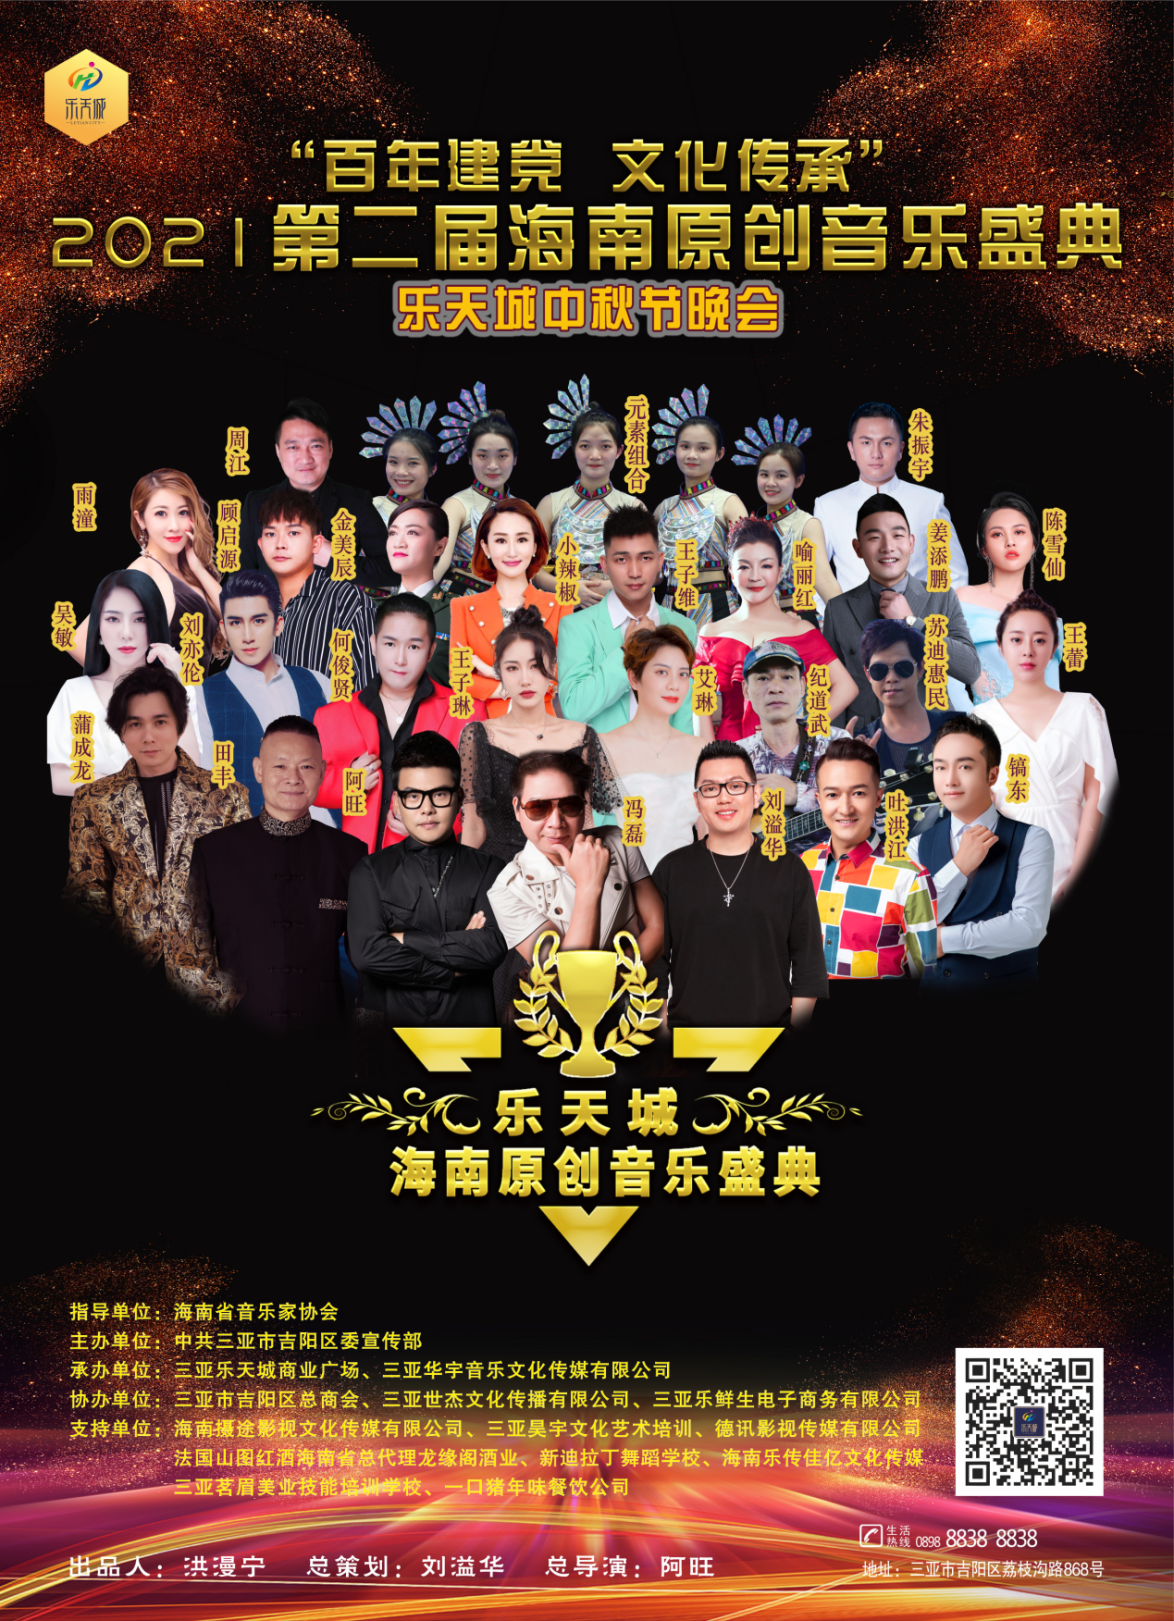 百年建党文化传承 2021年第二届海南原创音乐盛典成功举办